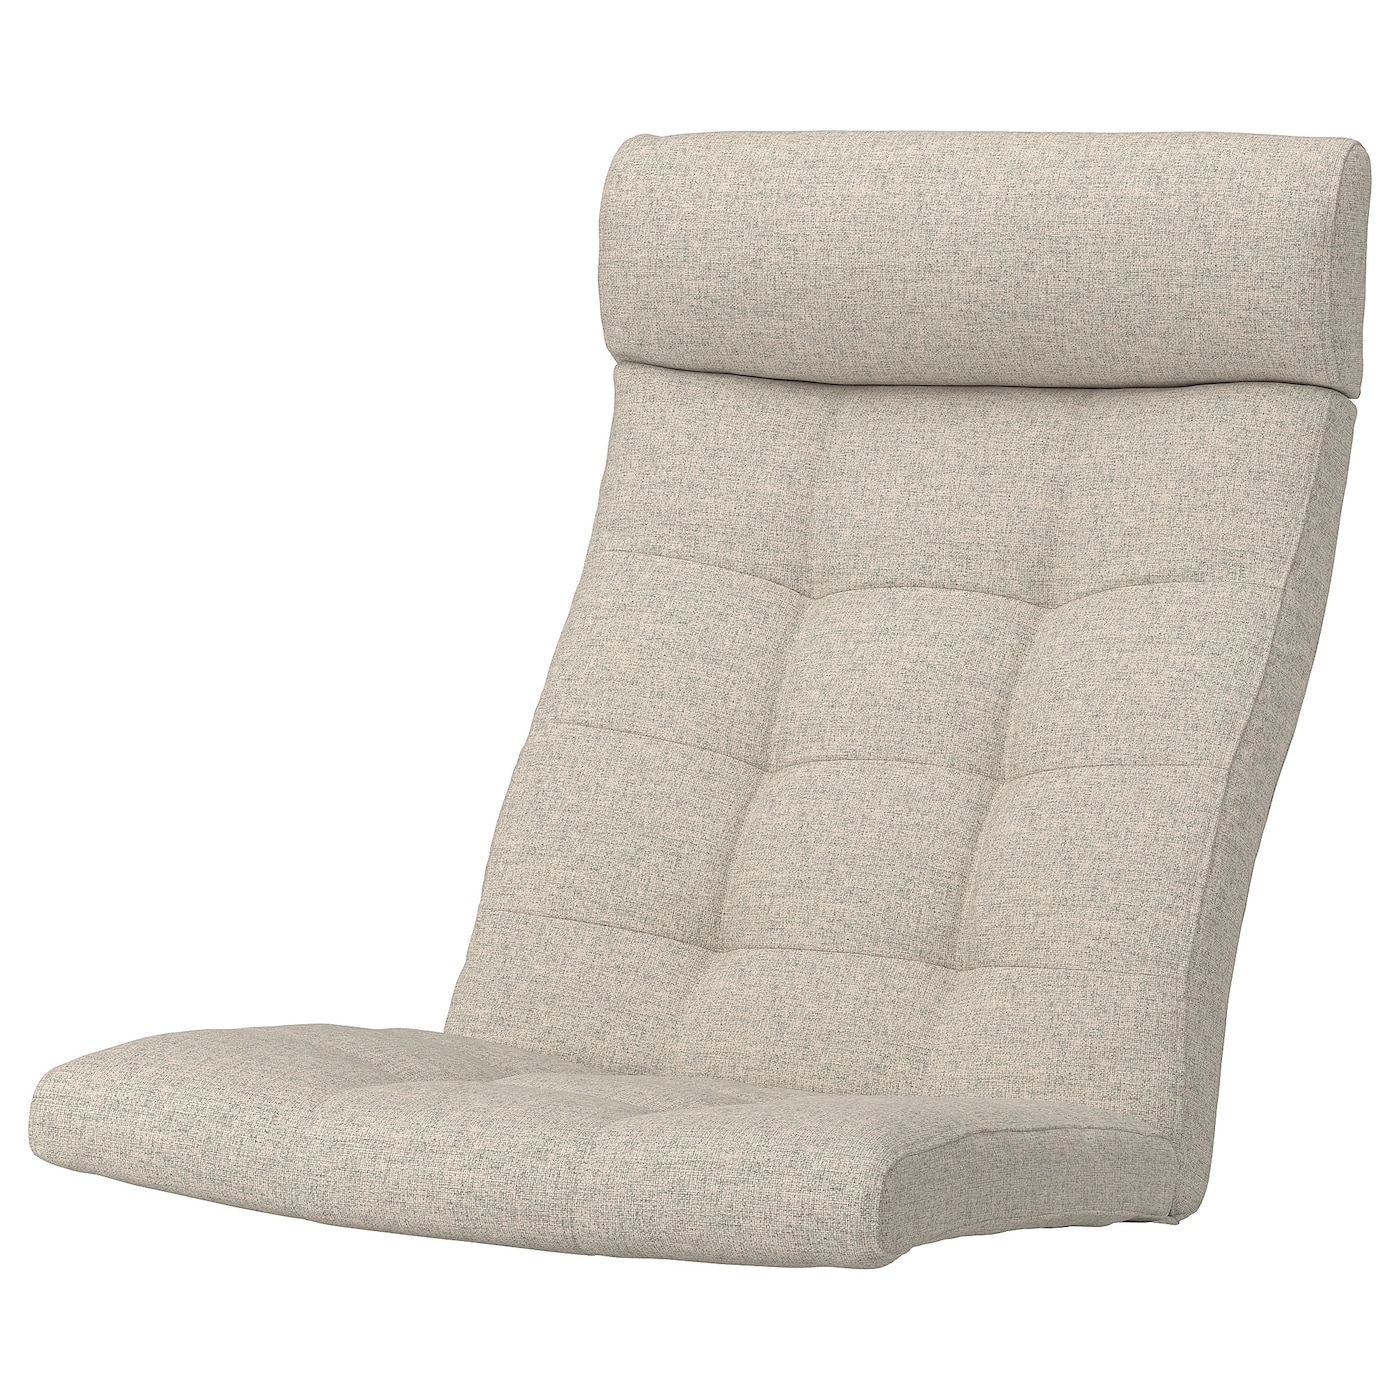 Подушка на кресло - POÄNG /POANG IKEA /  ПОЭНГ ИКЕА,  137х55 см, бежевый